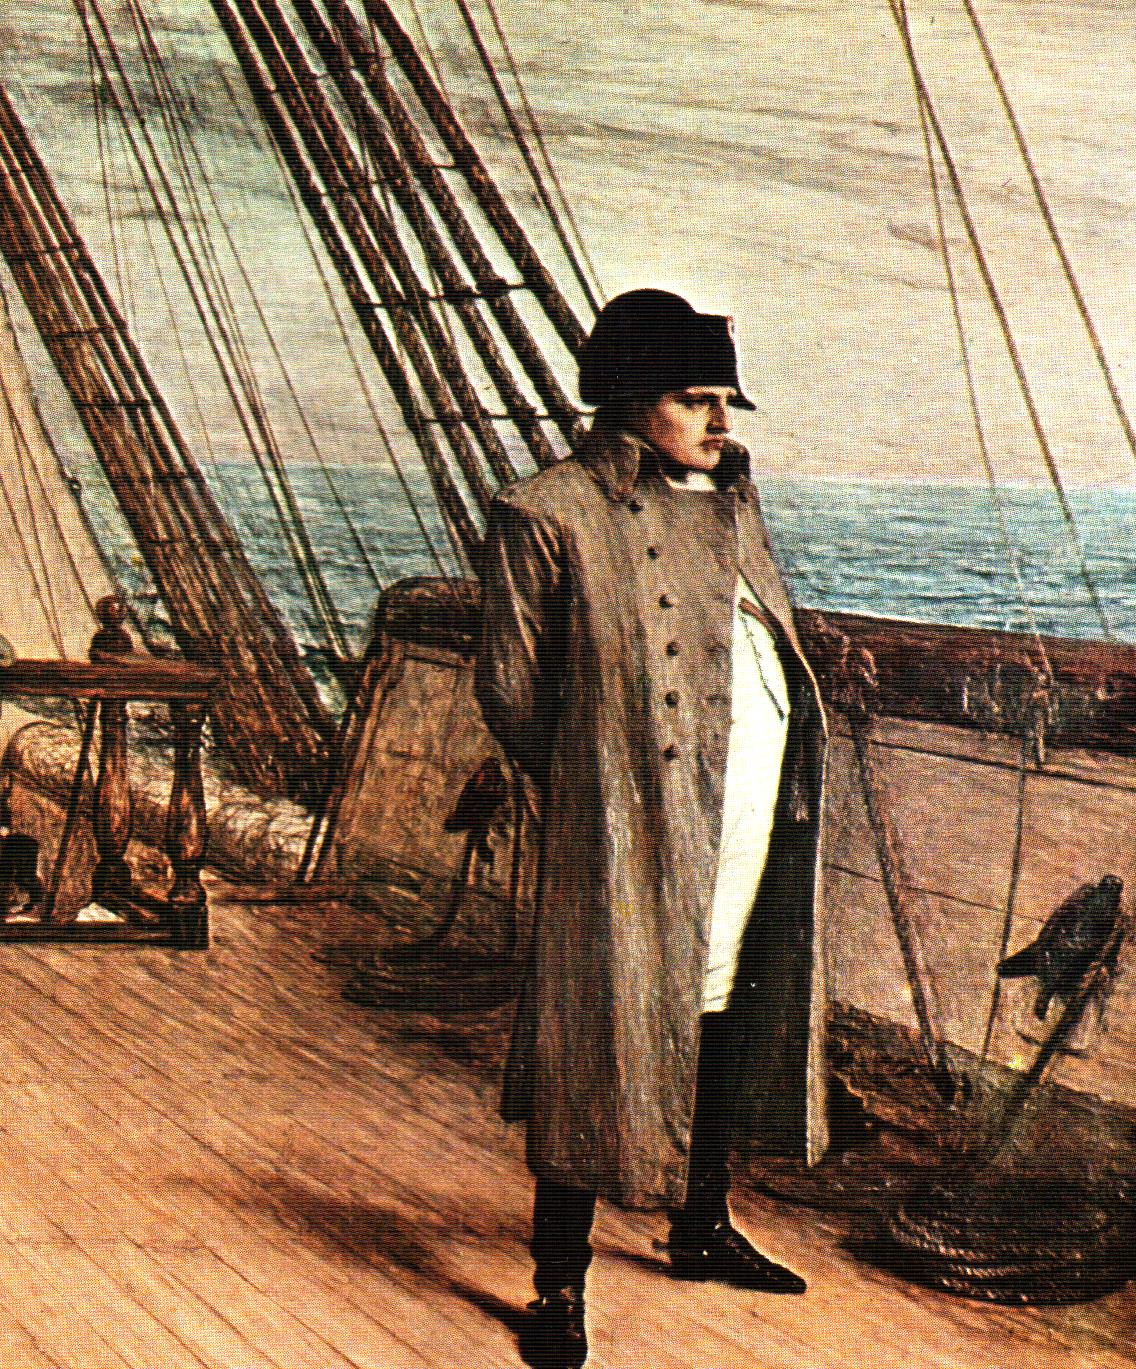 17 OCTOBRE 1815 : NAPOLÉON DÉBARQUE À SAINTE-HÉLÈNE